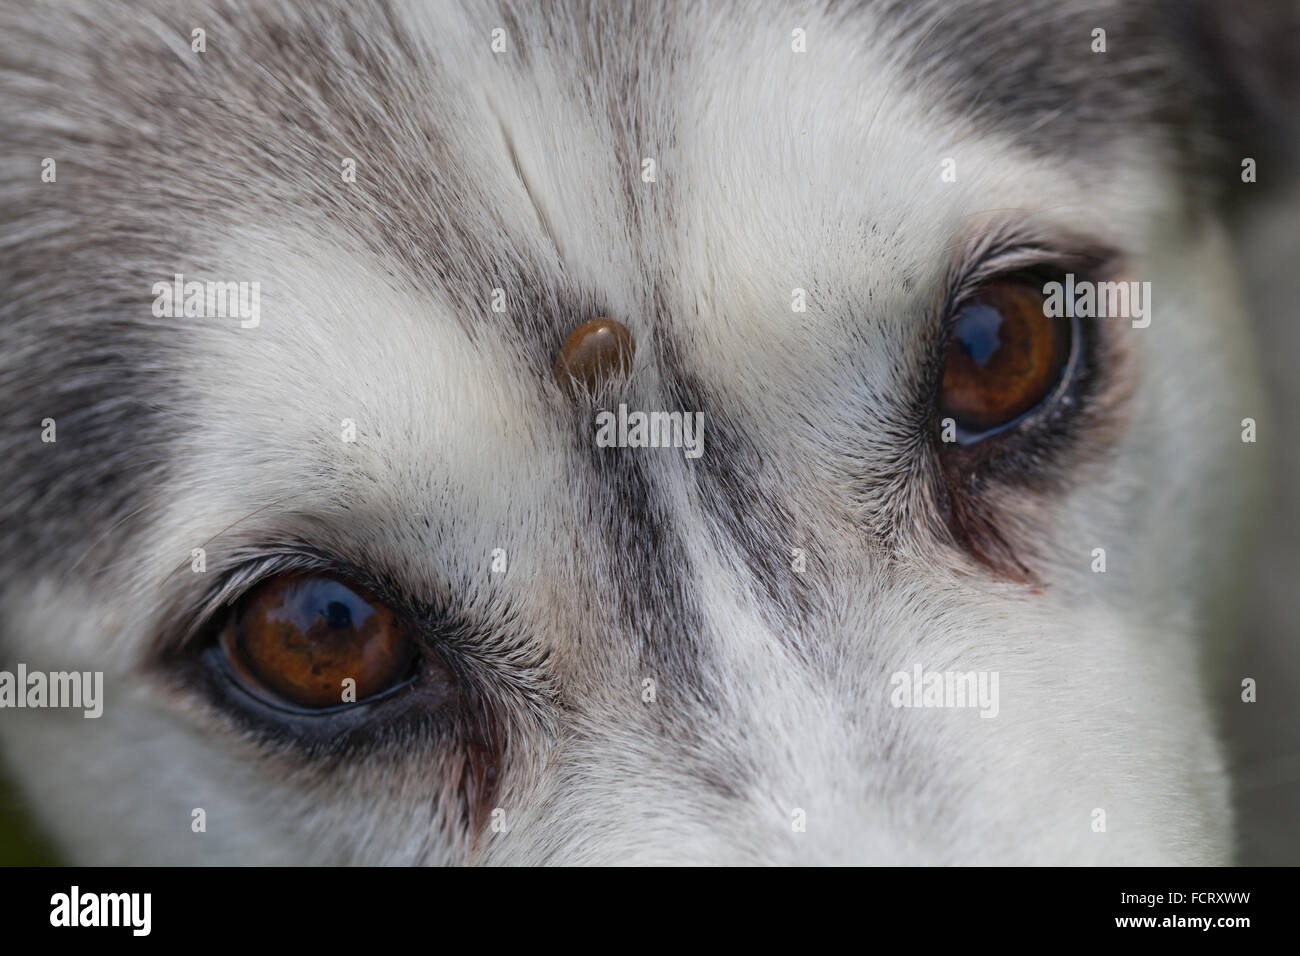 Siberian Husky. Hund. Canis Lupus Familiaris.  Stirn. Beachten Sie, dass die Zecke Ixodes Ricinus, auf der Stirn zwischen den Augen eingebettet. Stockfoto